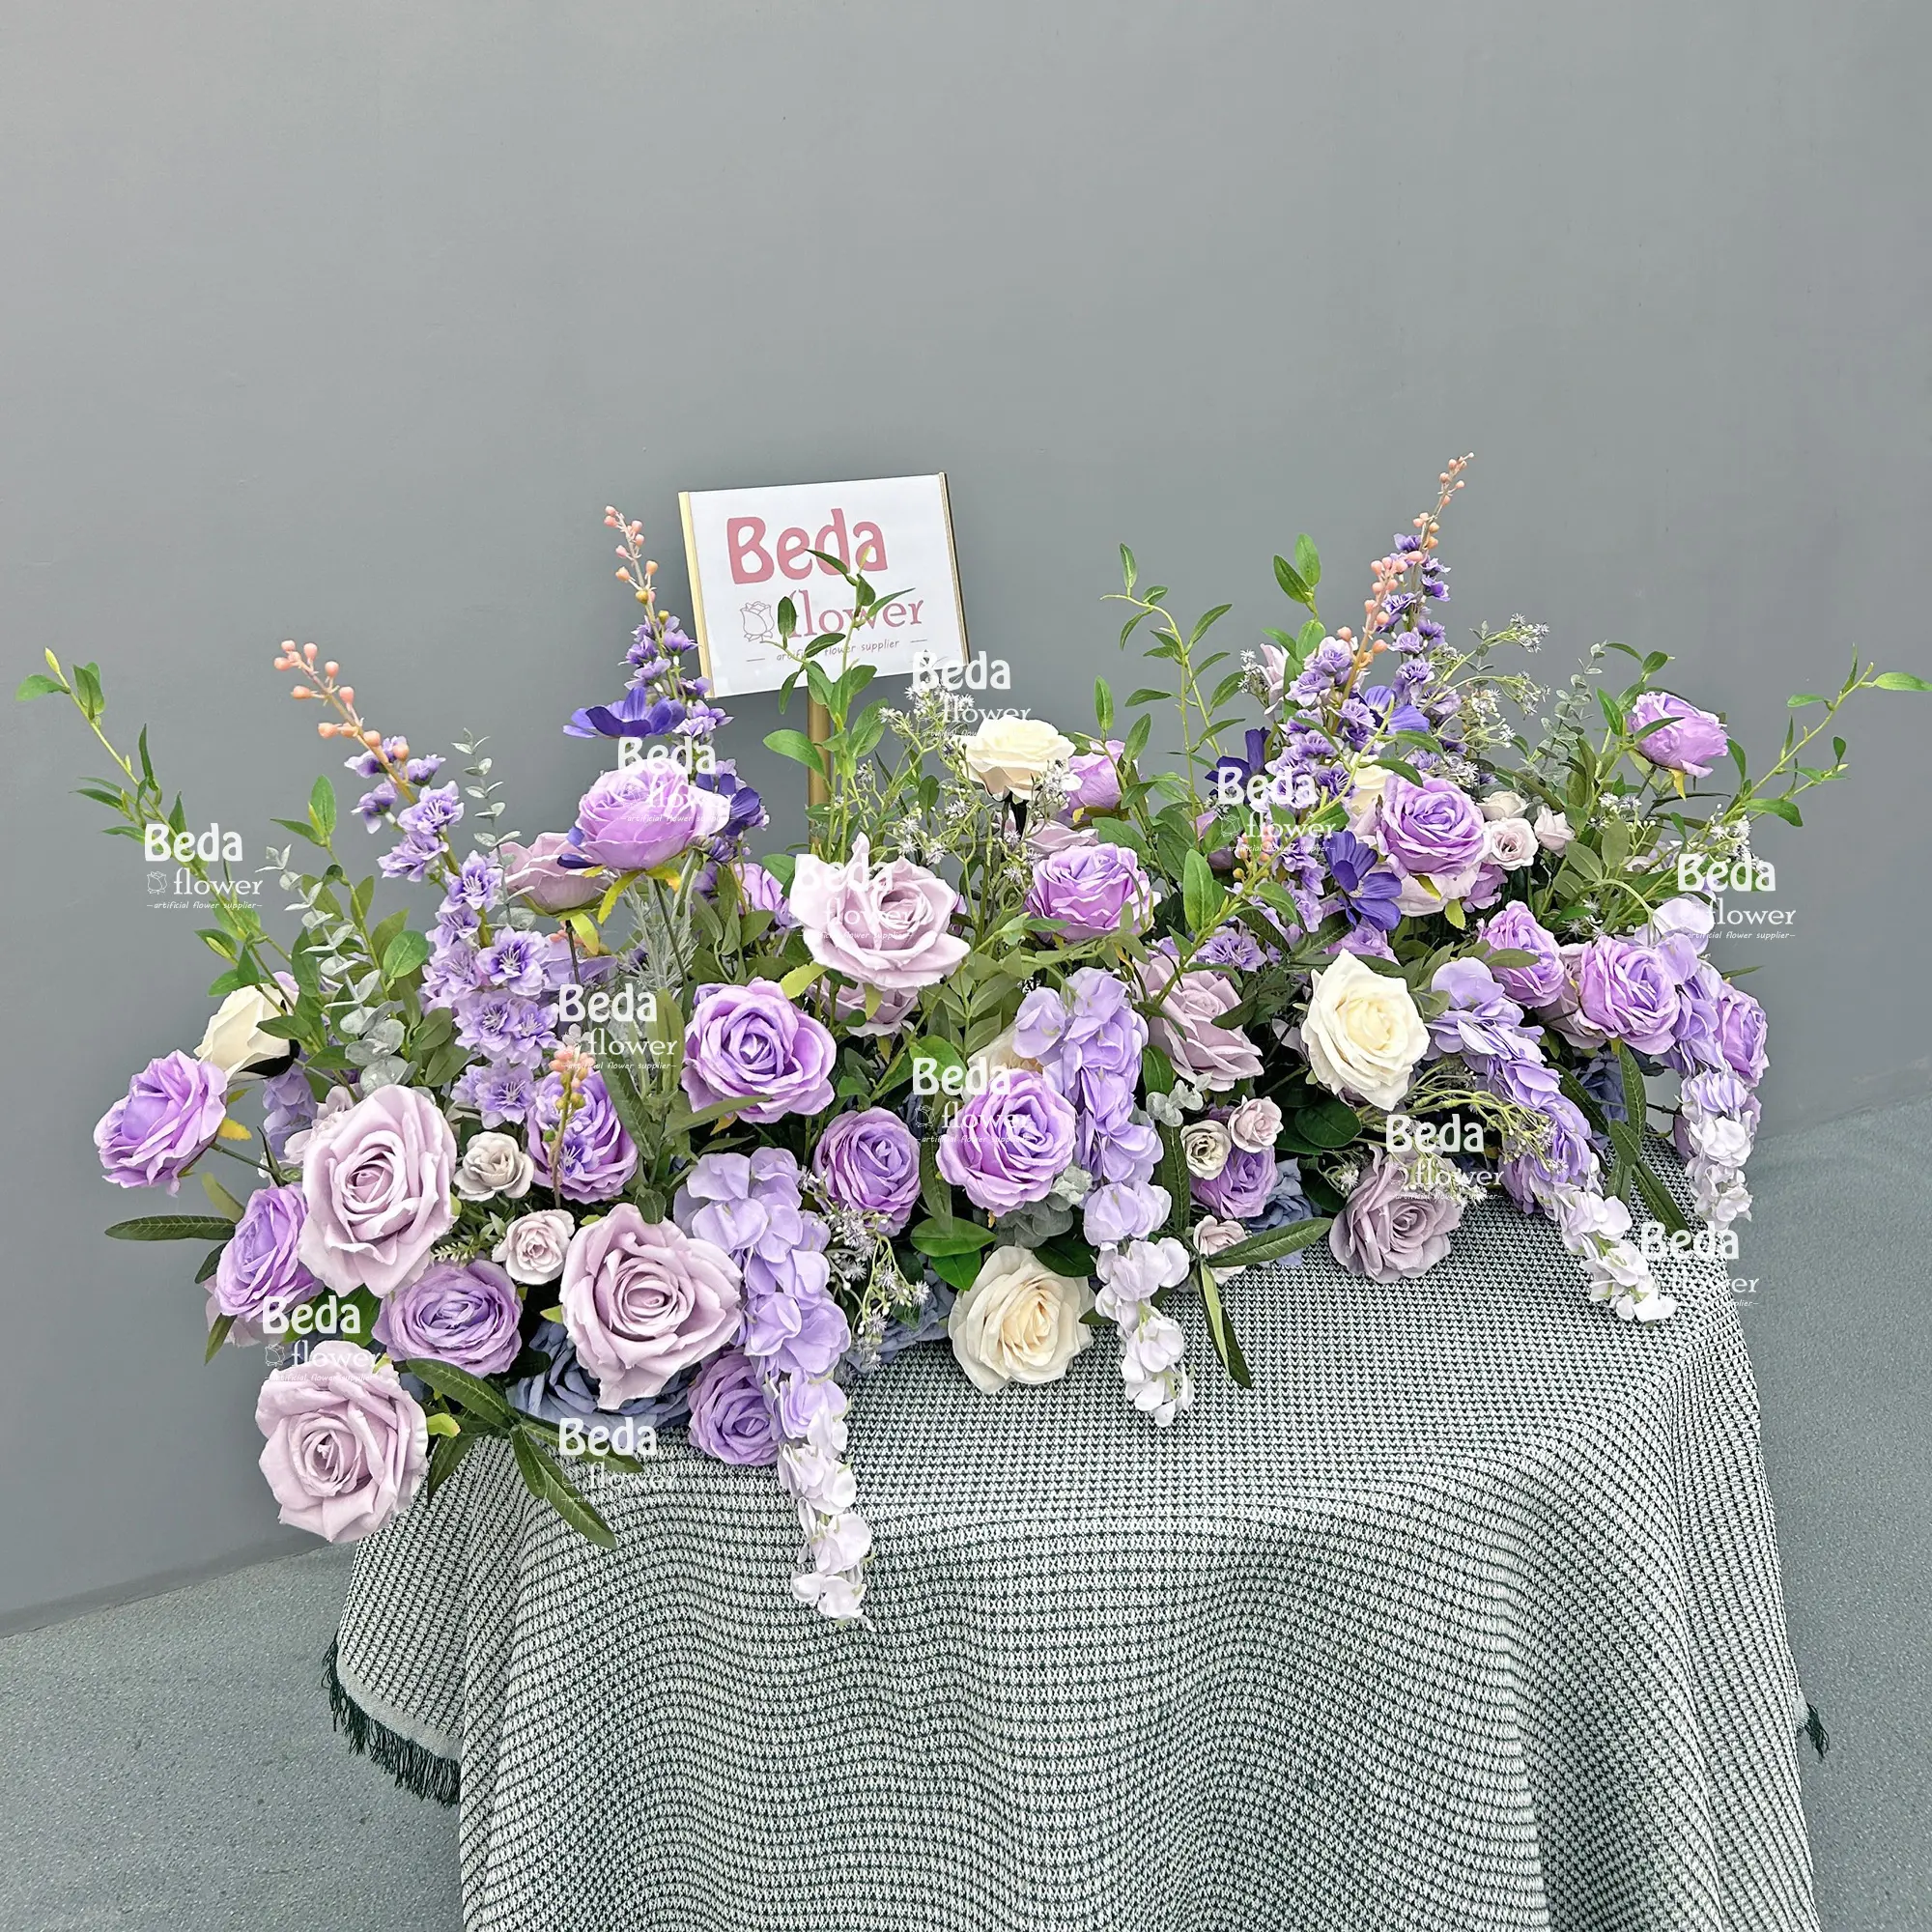 Hete Verkopende Paarse Roos Decoratie Slinger Zijde Bloemenslinger Middelpunt Bloemrij Tafel Flower Runner Voor Huwelijksfeest